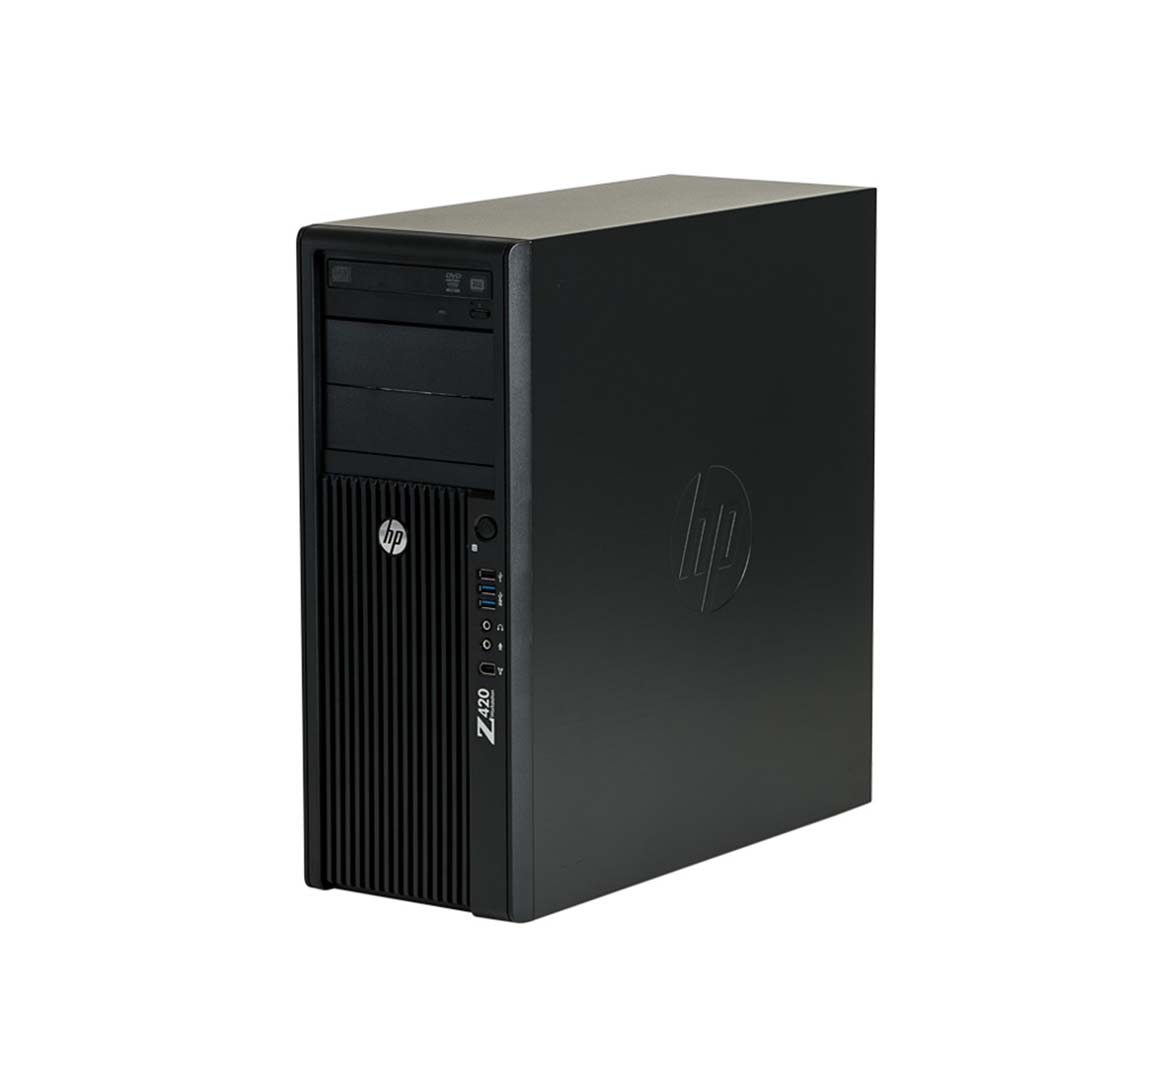 اتش بی Z420 Workstation Mini Tower Business Desktop PC ، وحدة المعالجة المركزية Intel Xeon E5 Series ، ذاكرة وصول عشوائي 16 جيجا بايت ، 512 جيجا بايت SSD ، wifi ، Windows 10 Pro ، كمبيوتر مكتبي مجدد